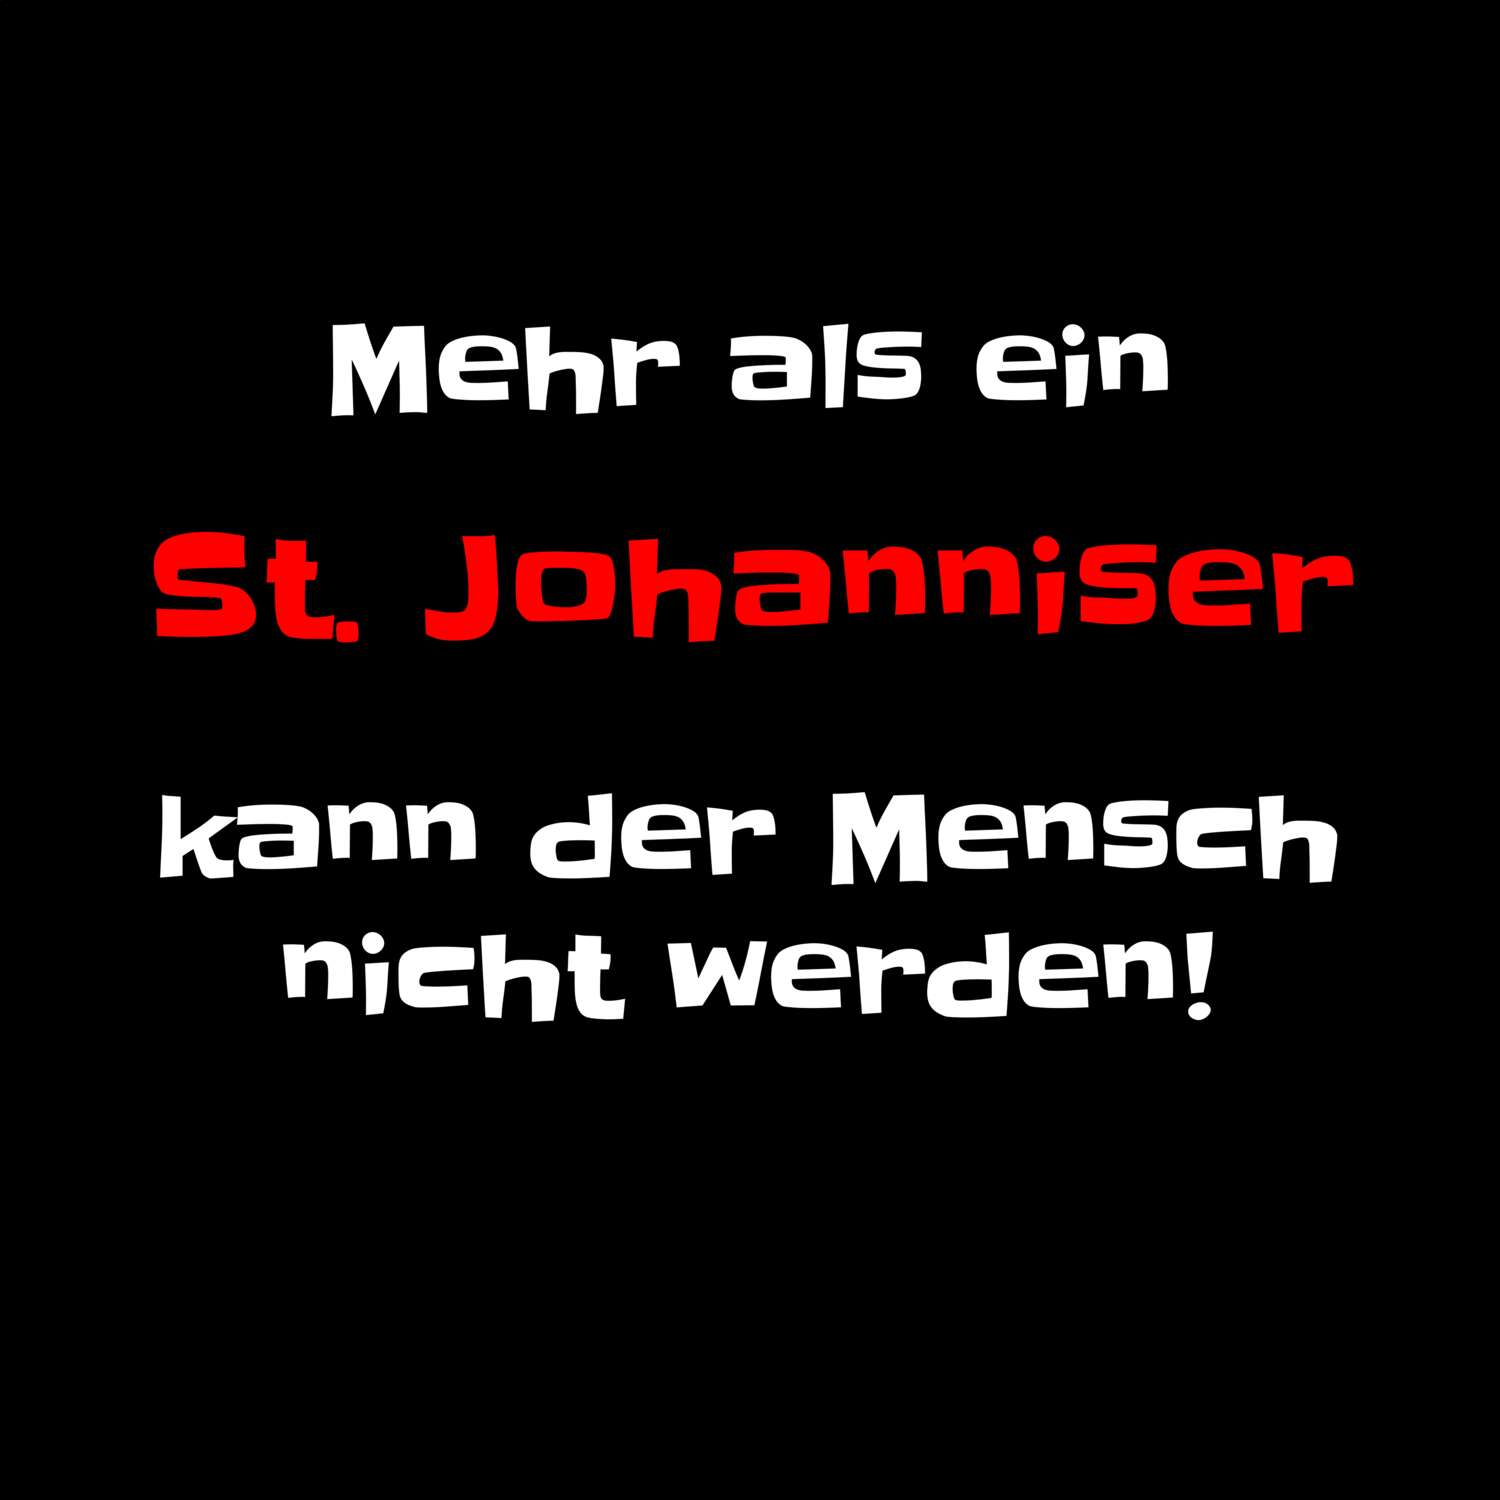 St. Johannis T-Shirt »Mehr als ein«